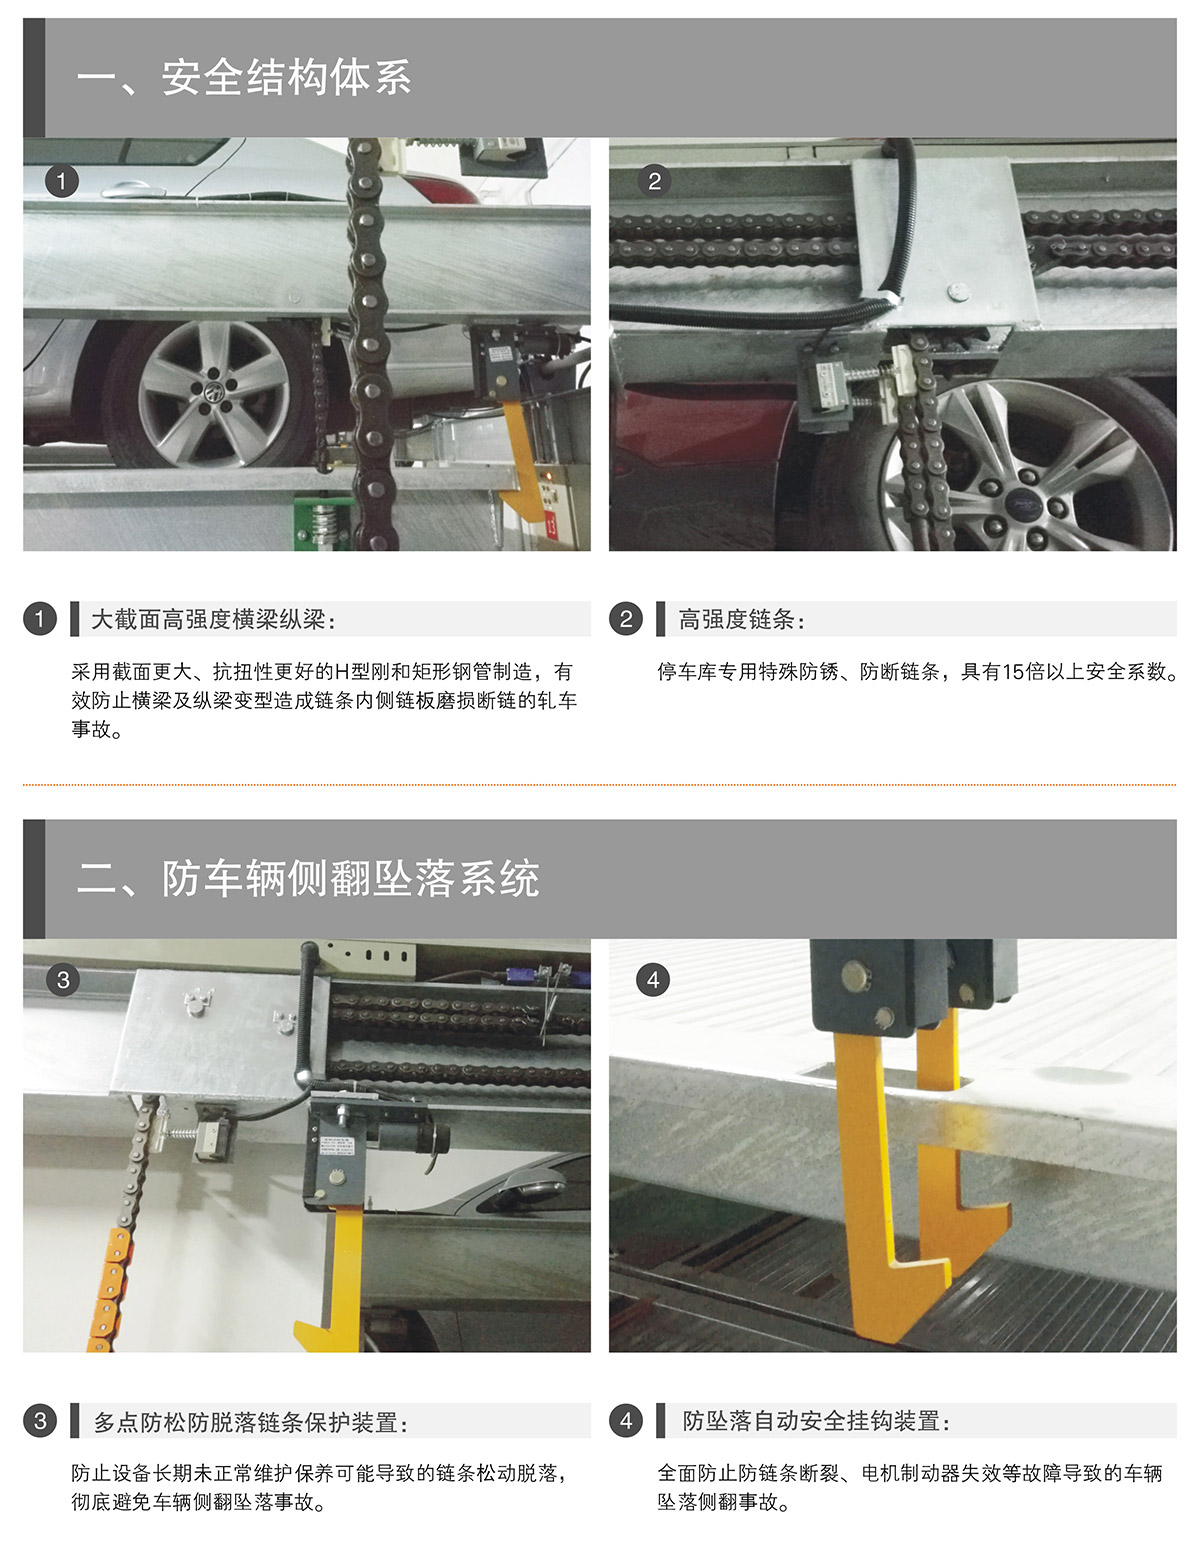 立体车位PSH升降横移机械停车设备安全结构体系.jpg